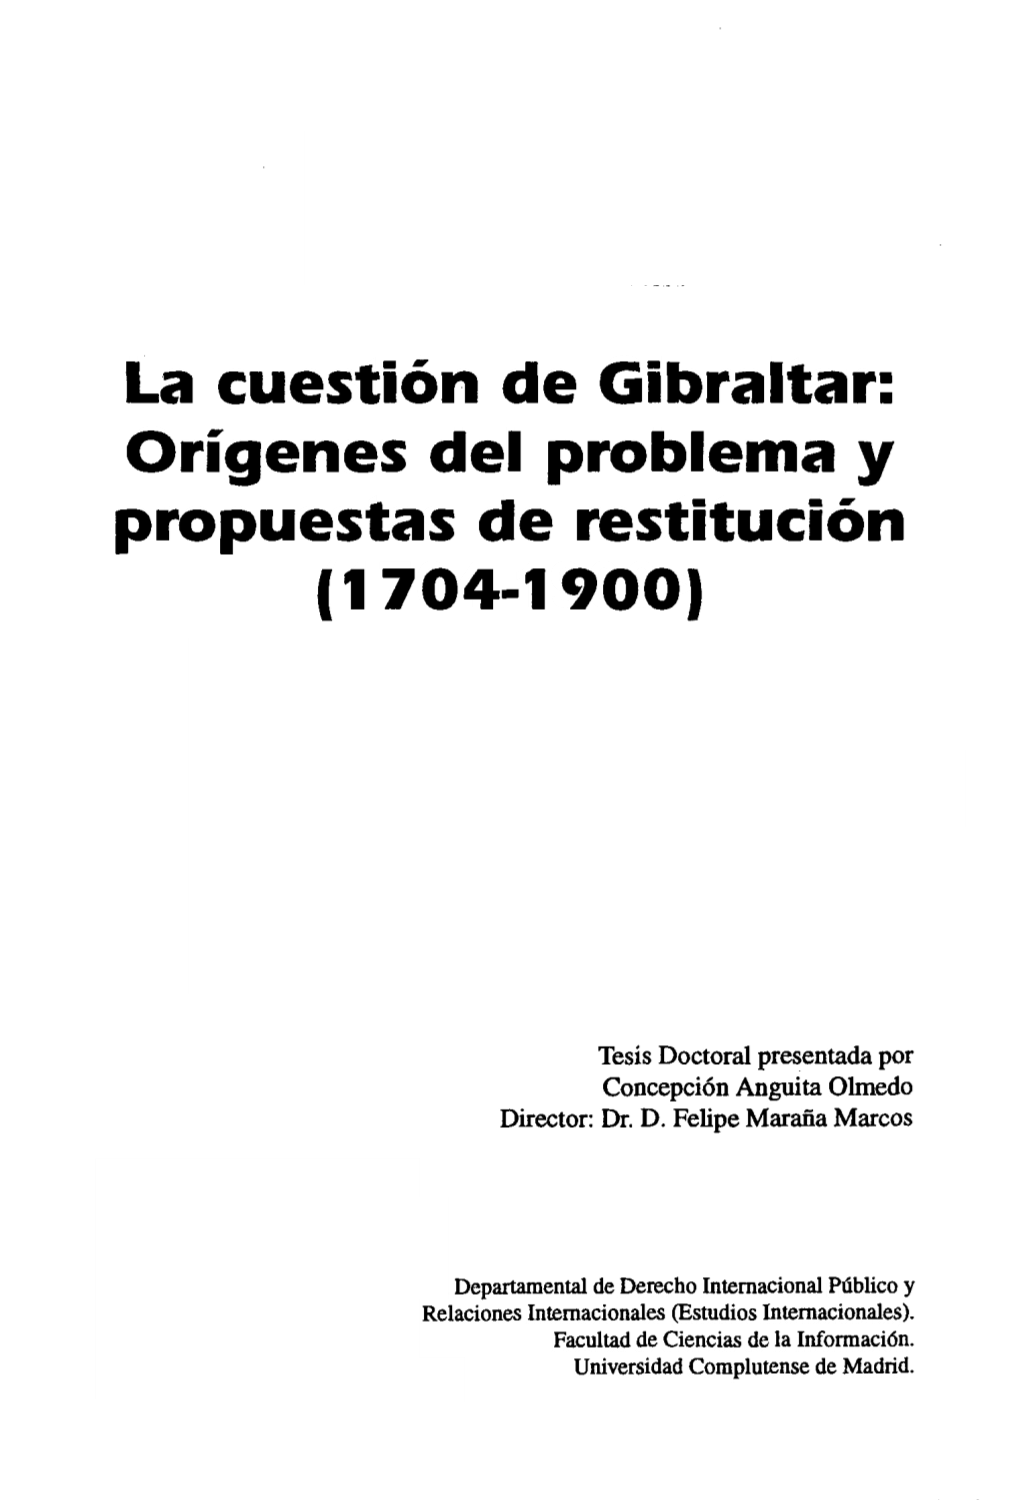 La Cuestión De Gibraltar: Origenes Del Problema Y Propuestas De Restitución (1704-1900>